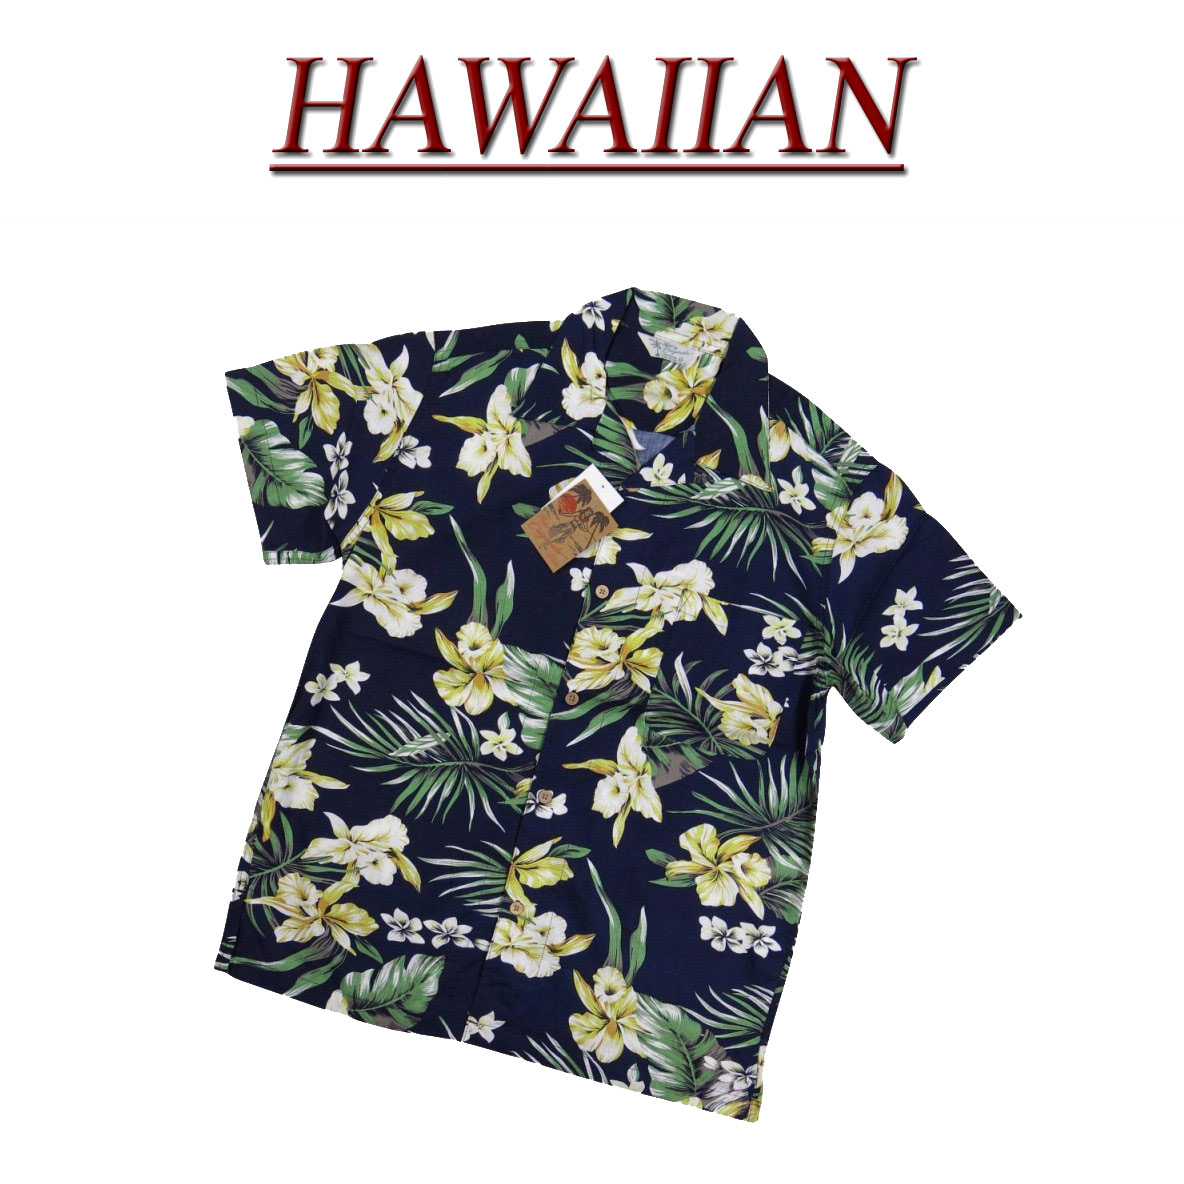  wu4412 新品 ハイビスカス 花柄 半袖 レーヨン100% アロハシャツ メンズ アロハ ハワイアンシャツ  (ビッグサイズあります!)